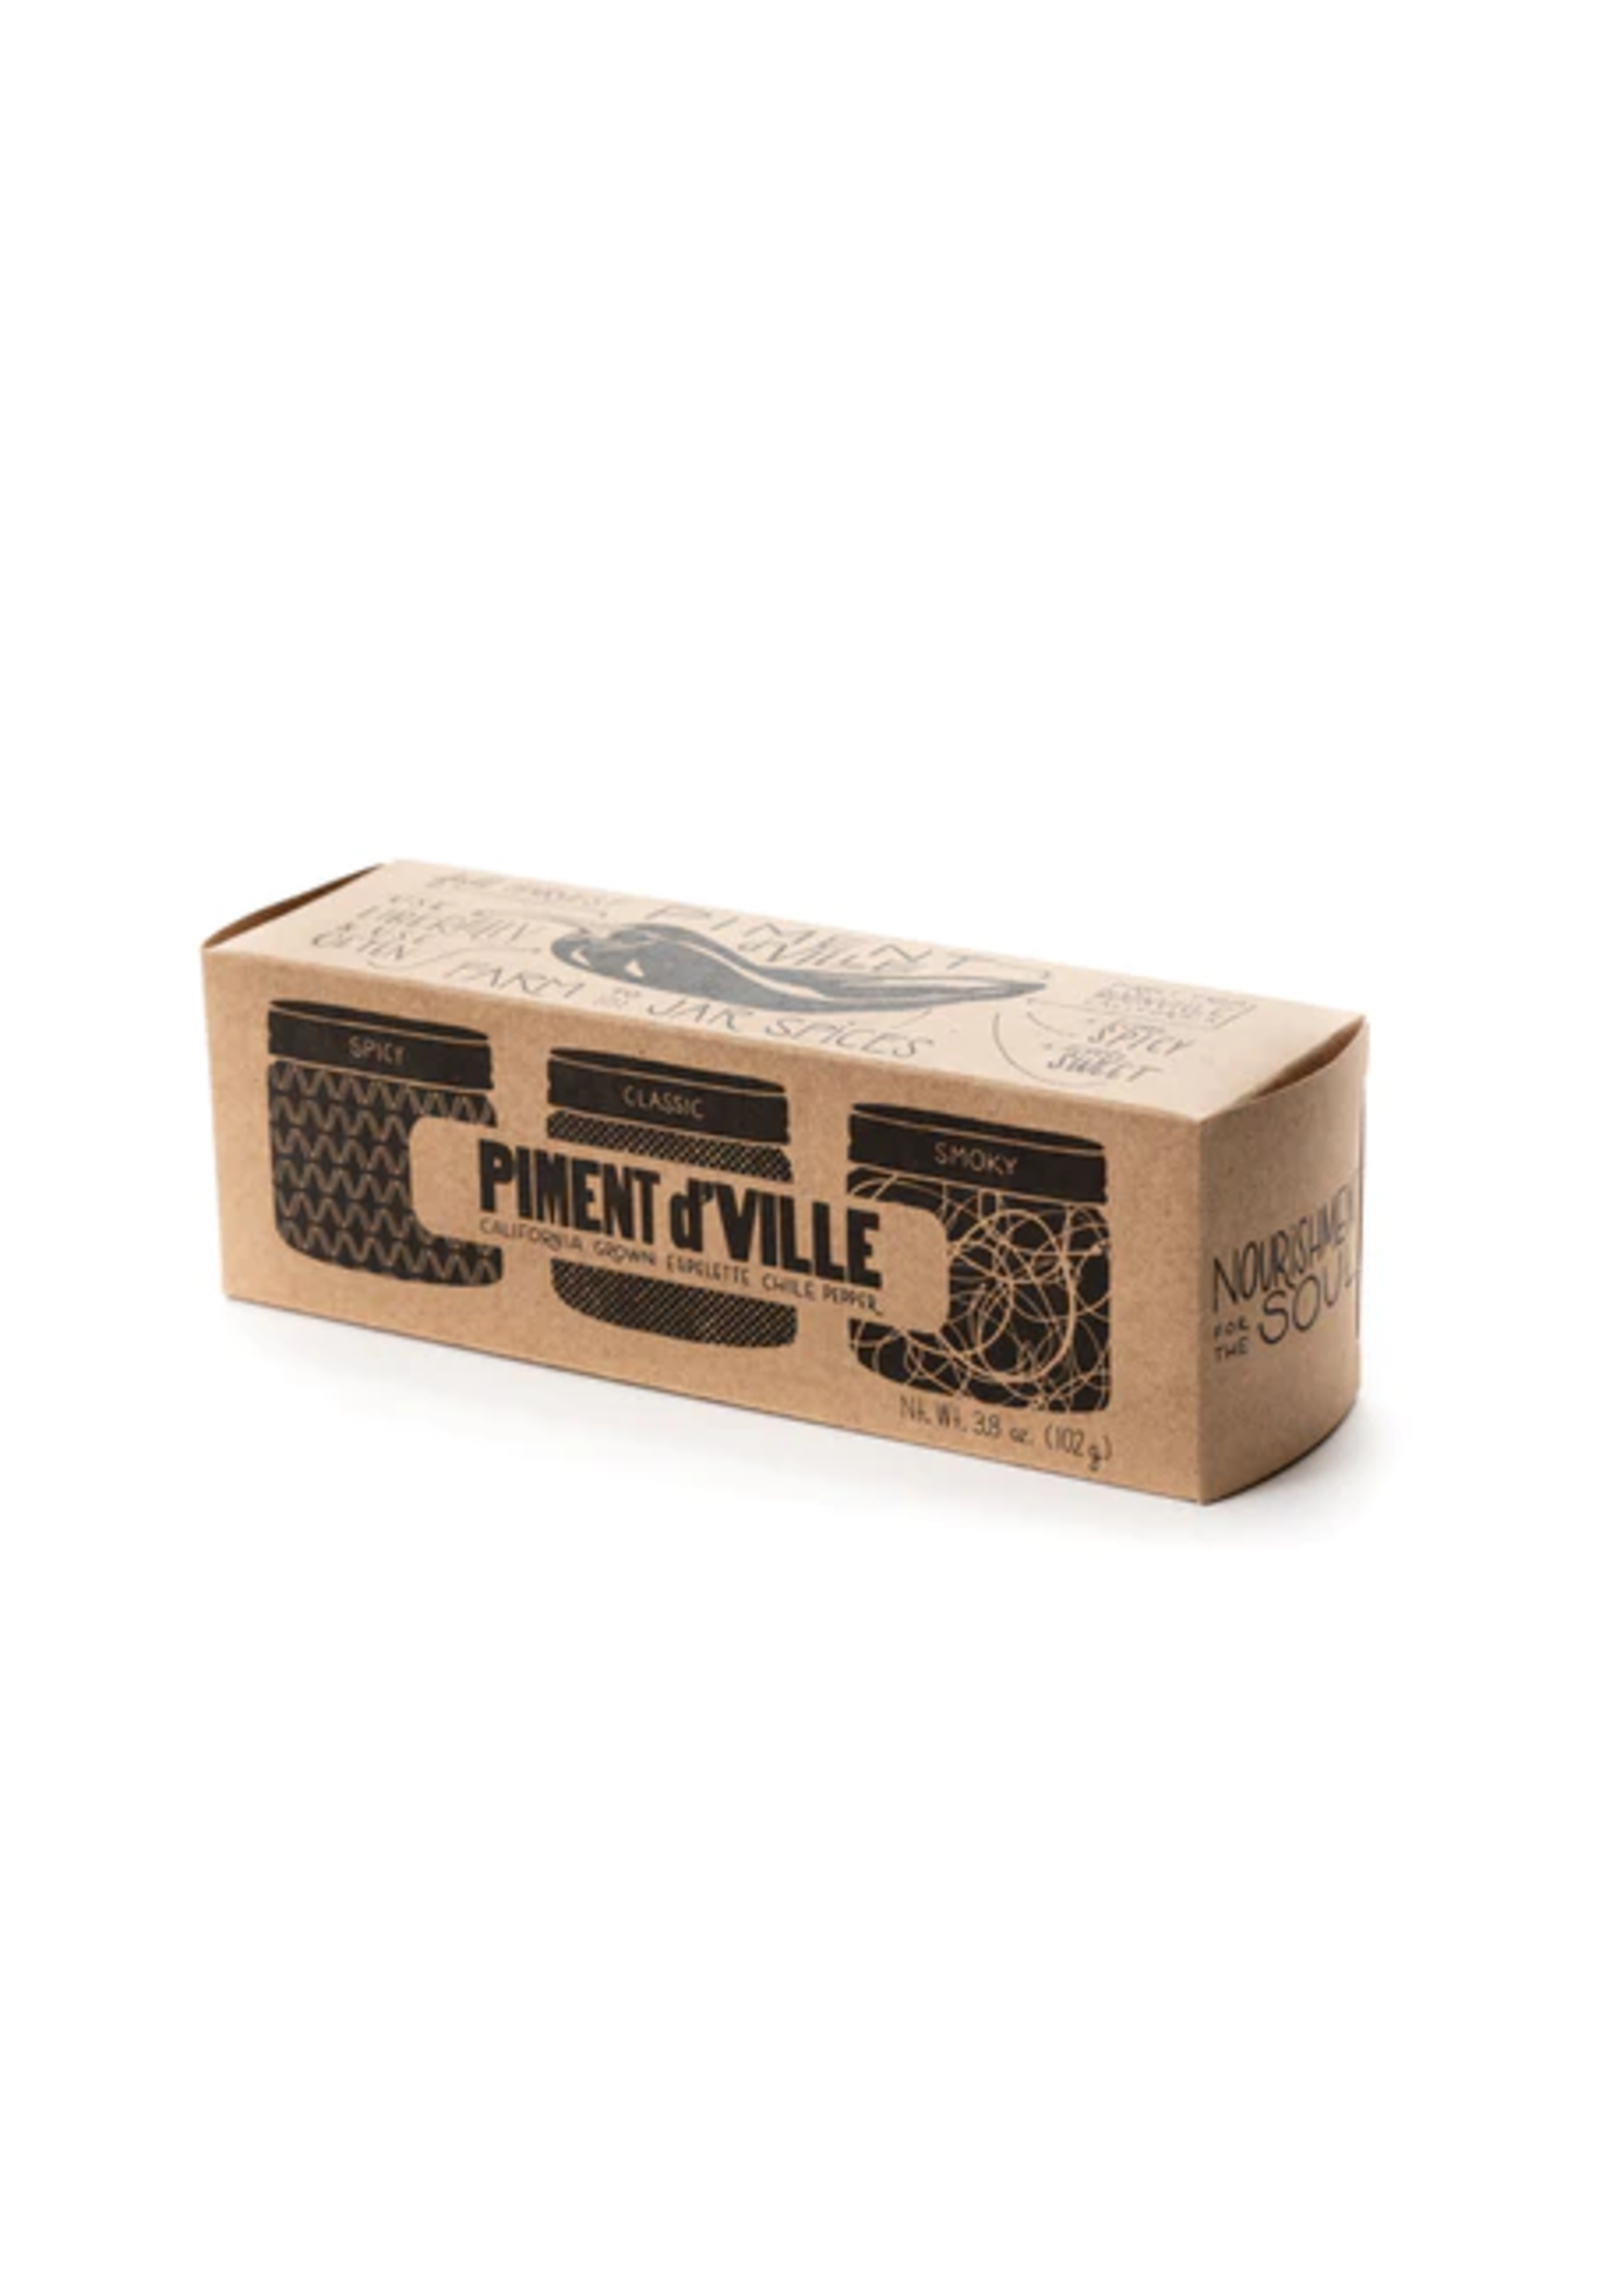 Piment d’Ville Collection Box - 3 - 1.2 oz Jars